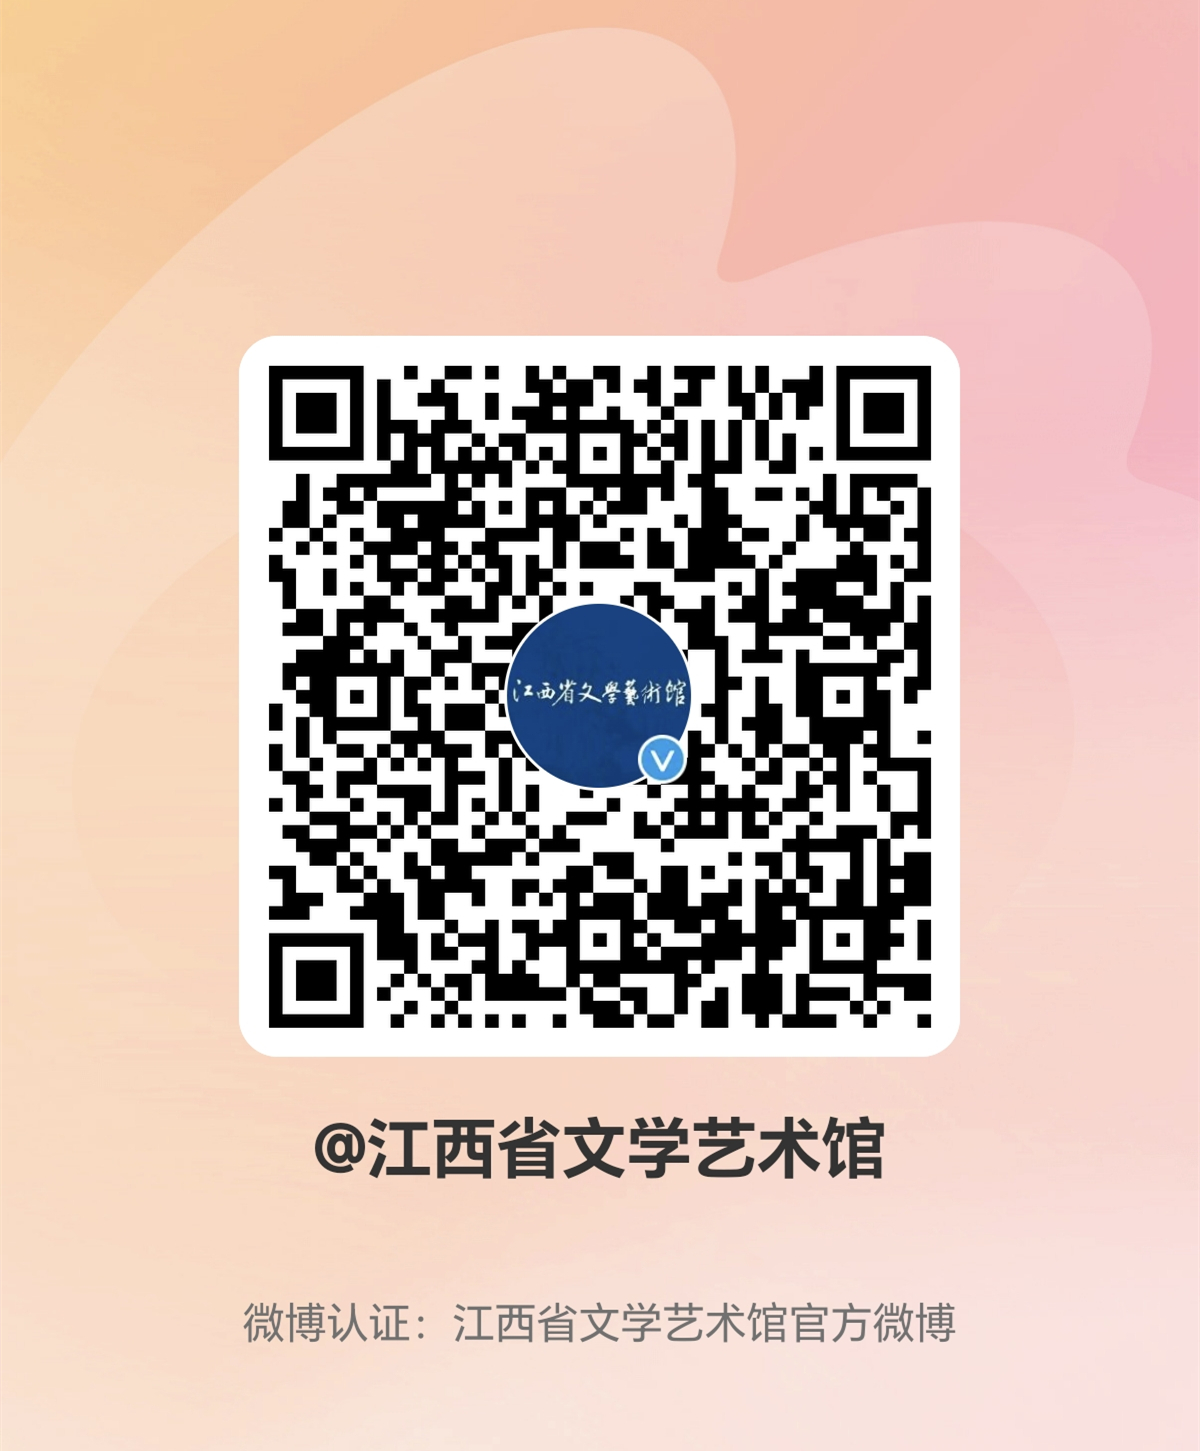 江西省文学艺术馆官方微博正式上线了(图1)